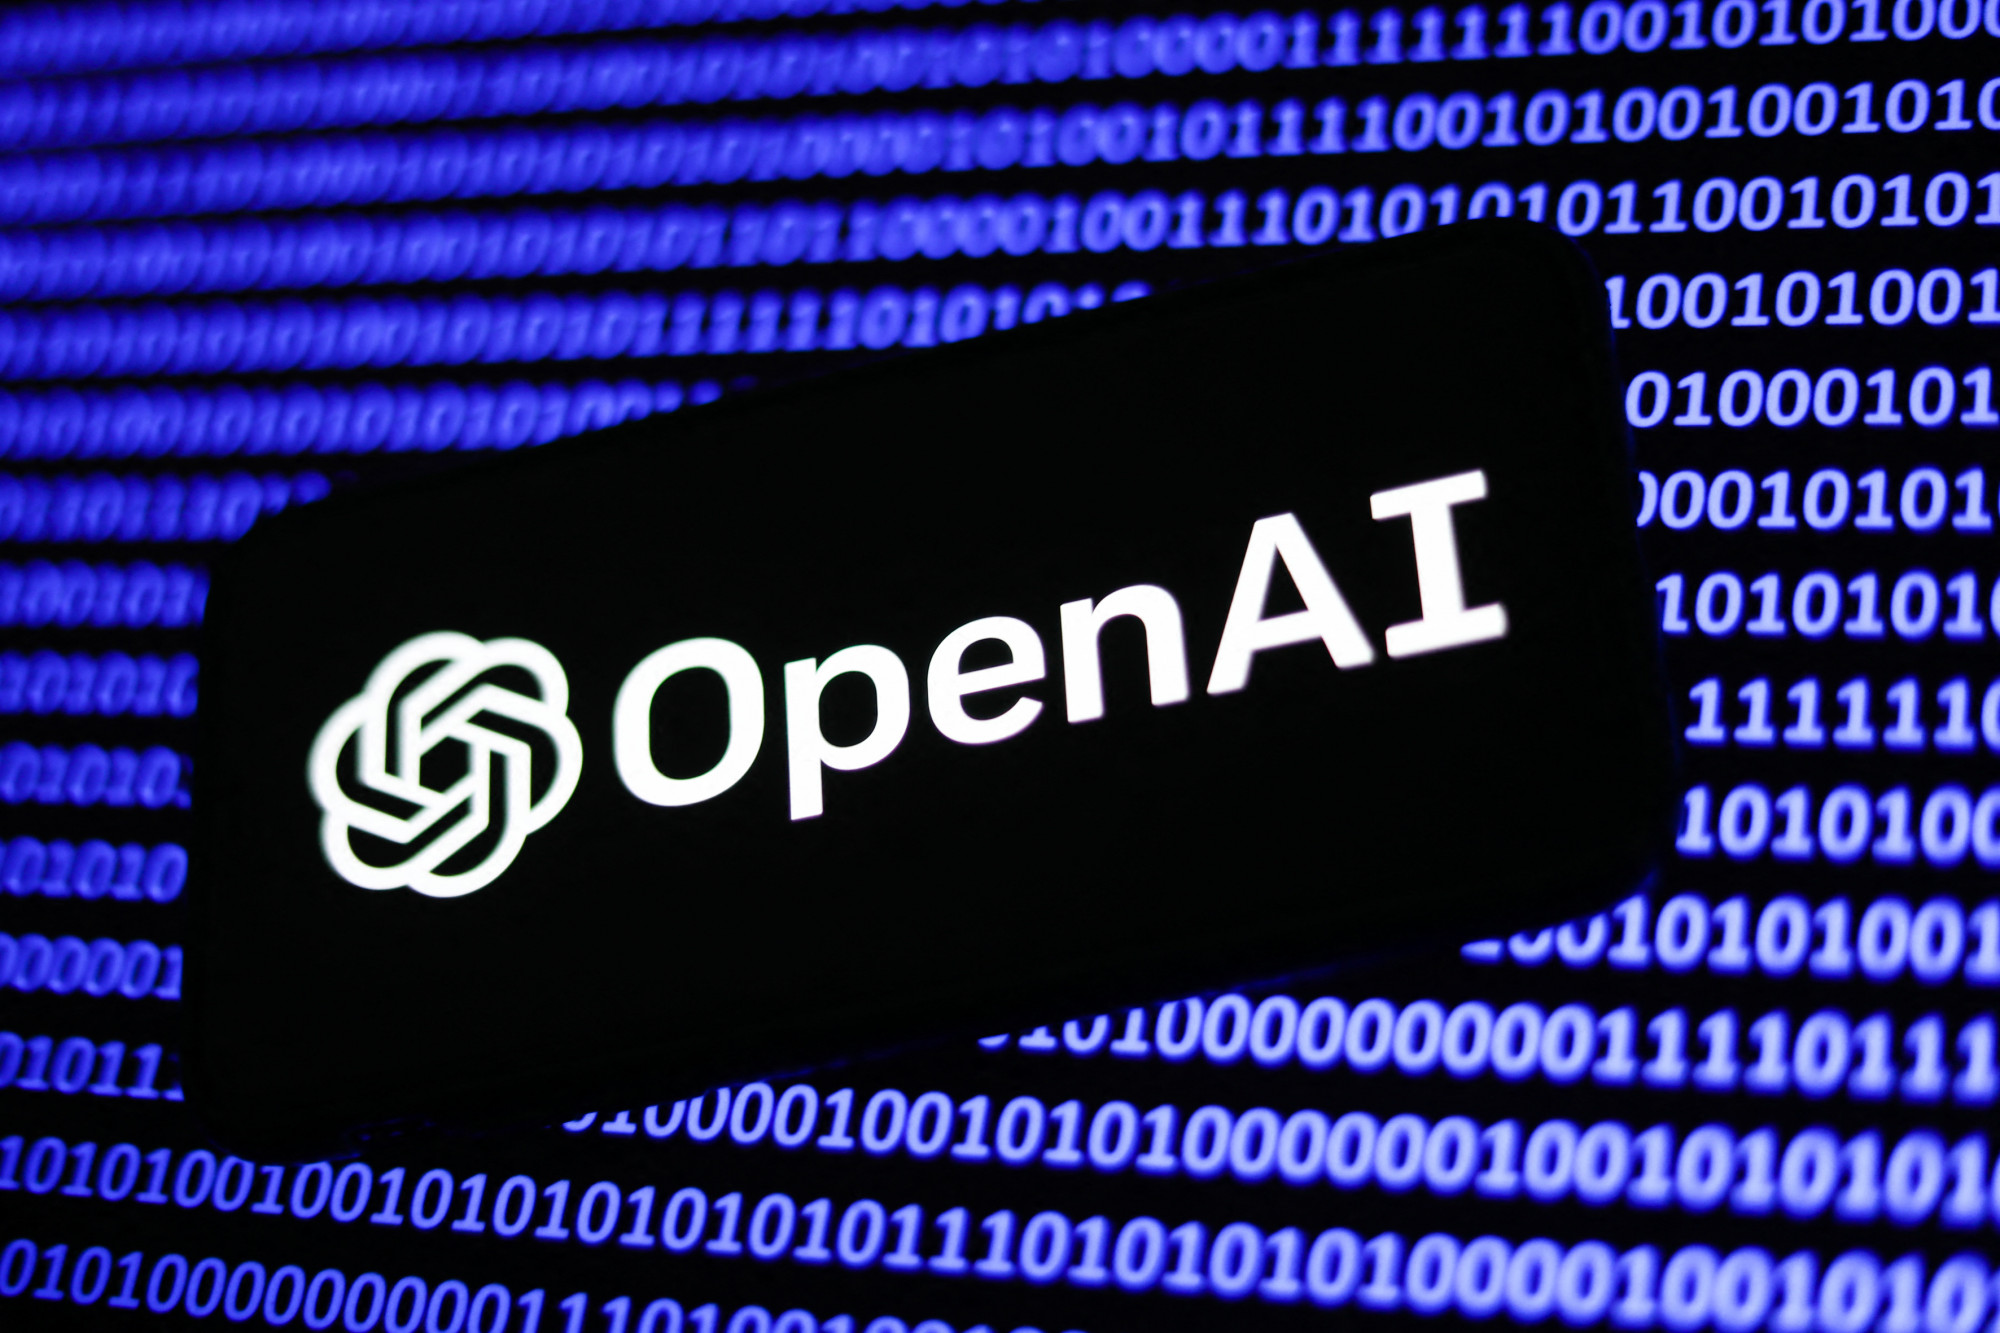 Az OpenAI törölte a ChatGPT szabályzatából a katonai felhasználást tiltó részt